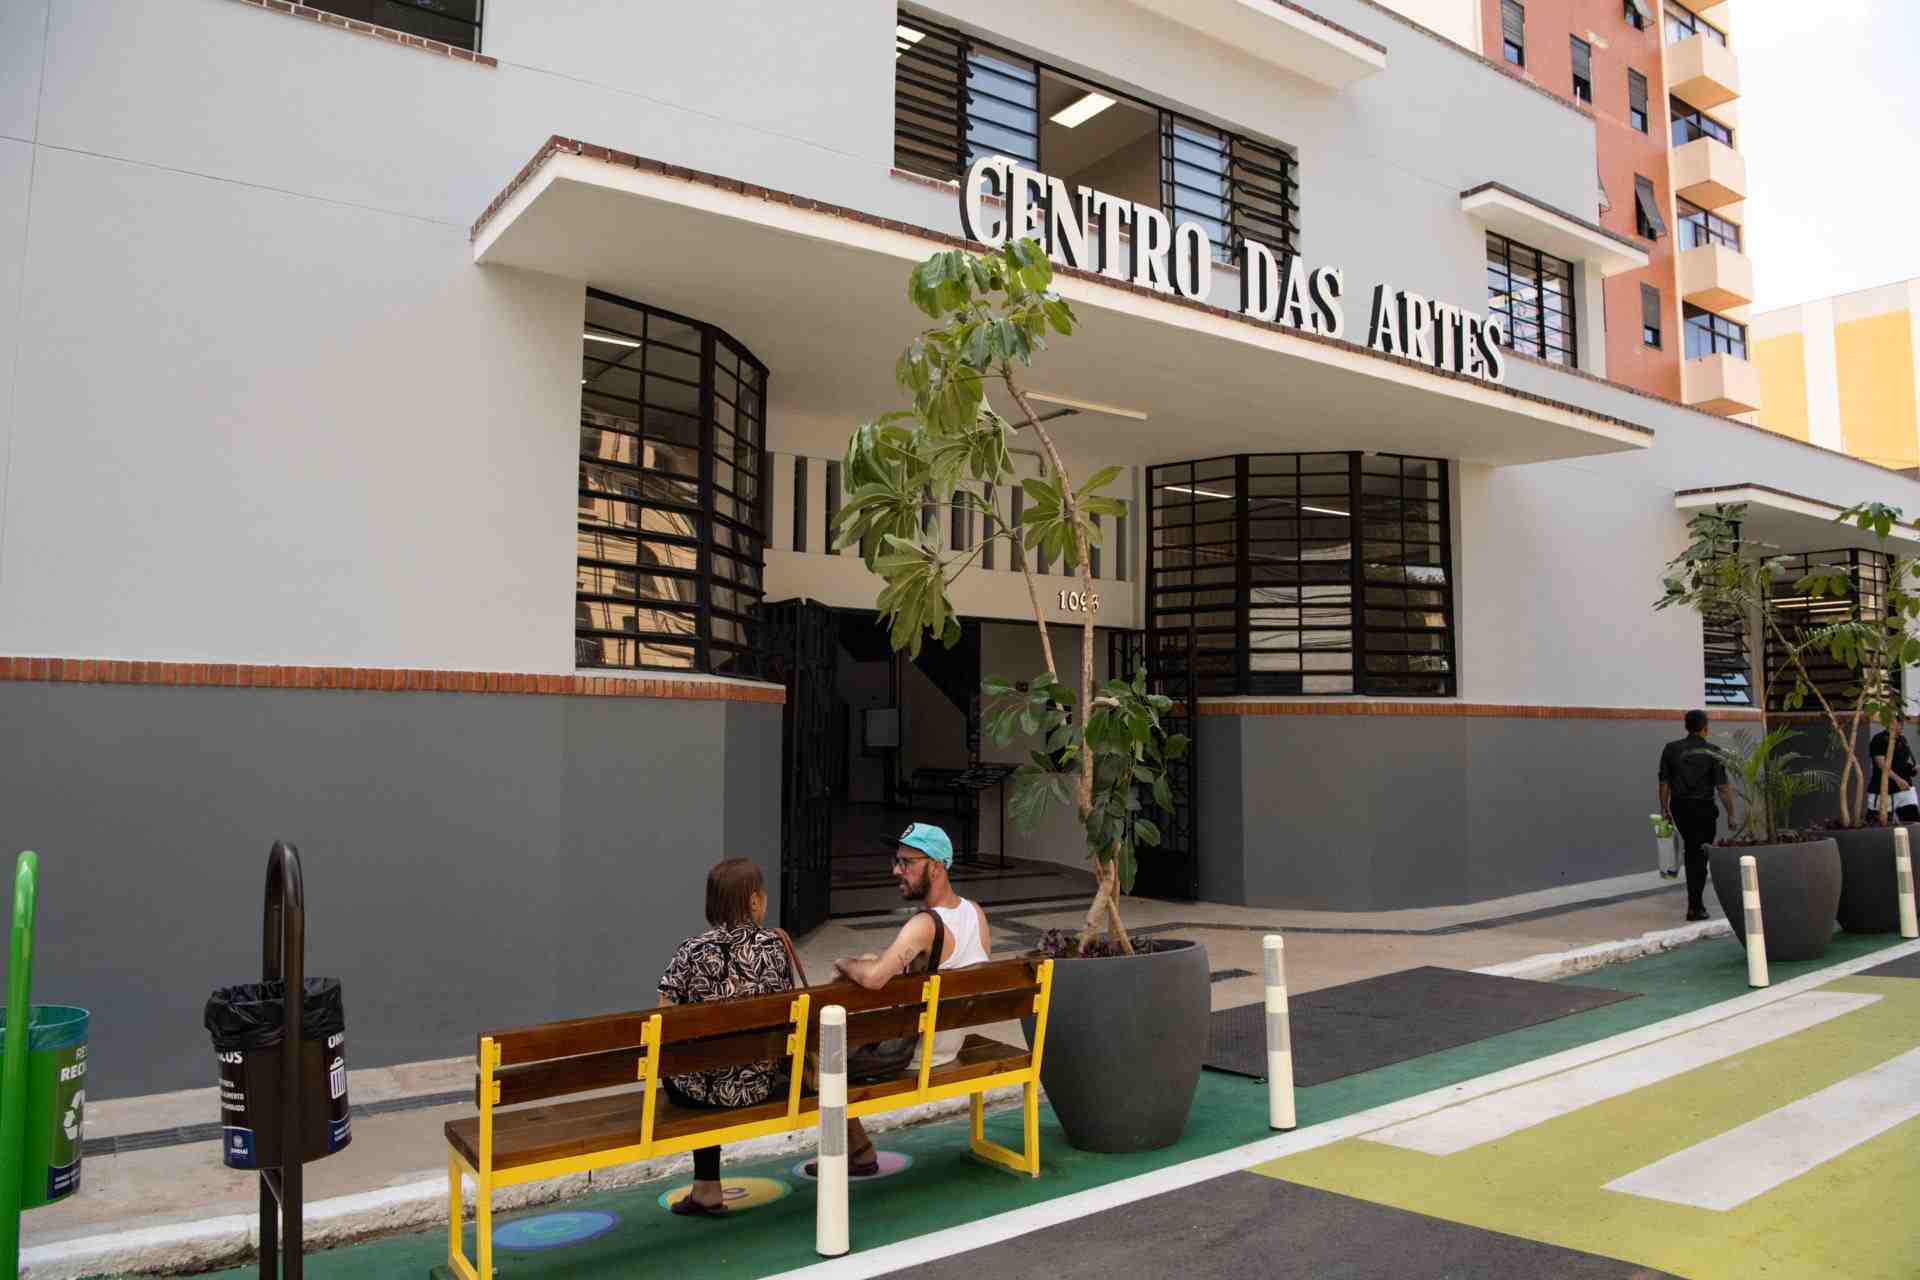 Entrada do Centro das Artes em Jundiaí, com duas pessoas sentadas em um banco na frente e plantas decorativas ao redor.